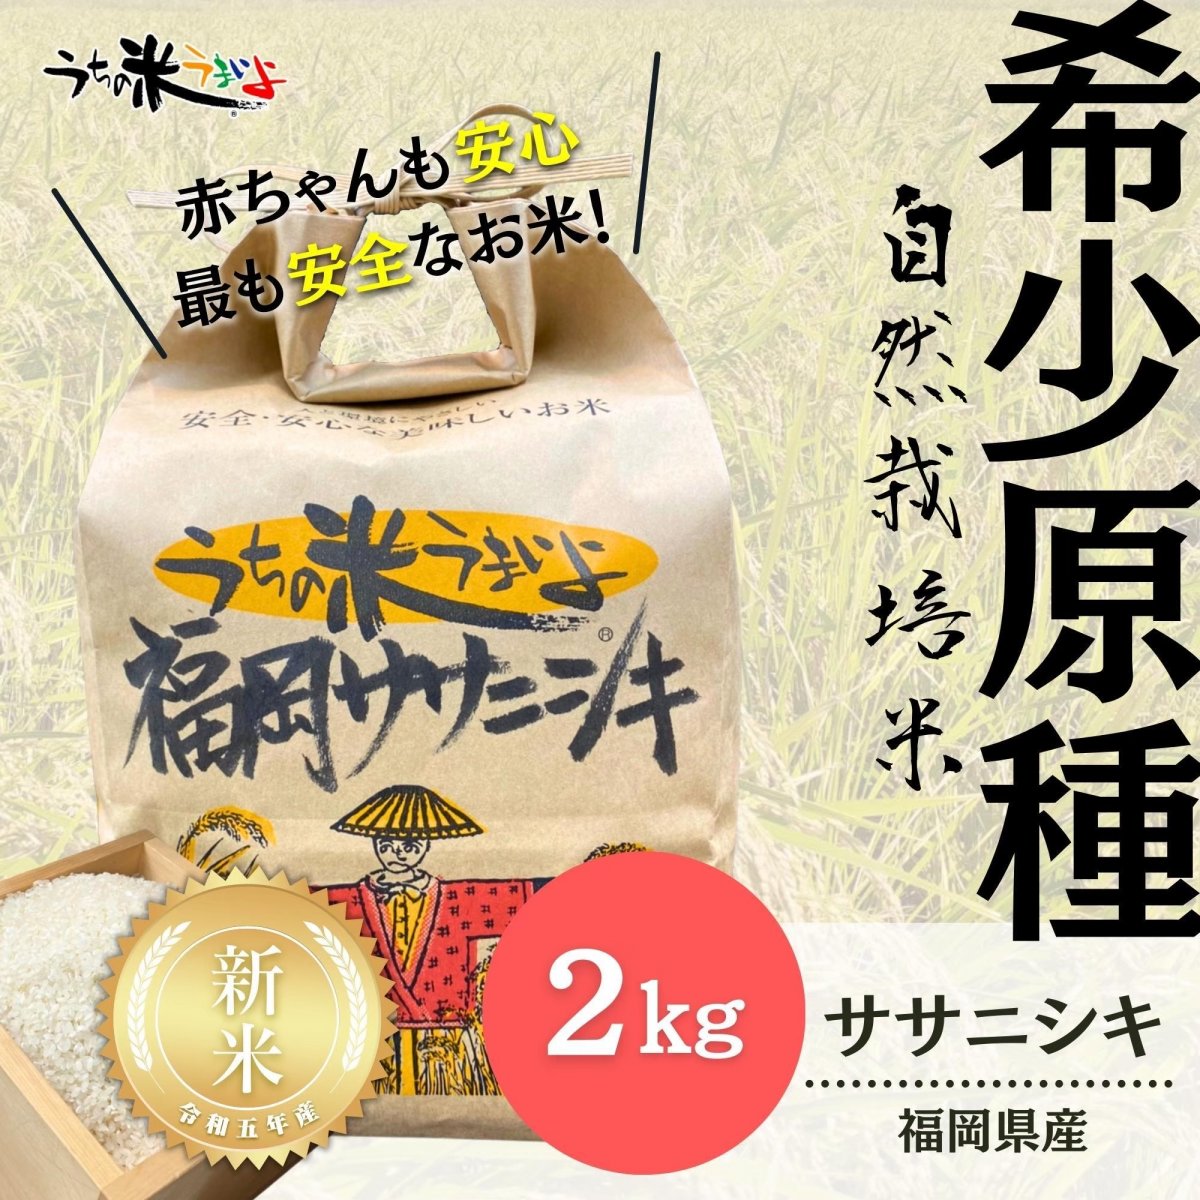 新米入荷‼︎２kg【希少な固定種】福岡県産ササニシキ【自然栽培米】〜数少ない貴重なお米です